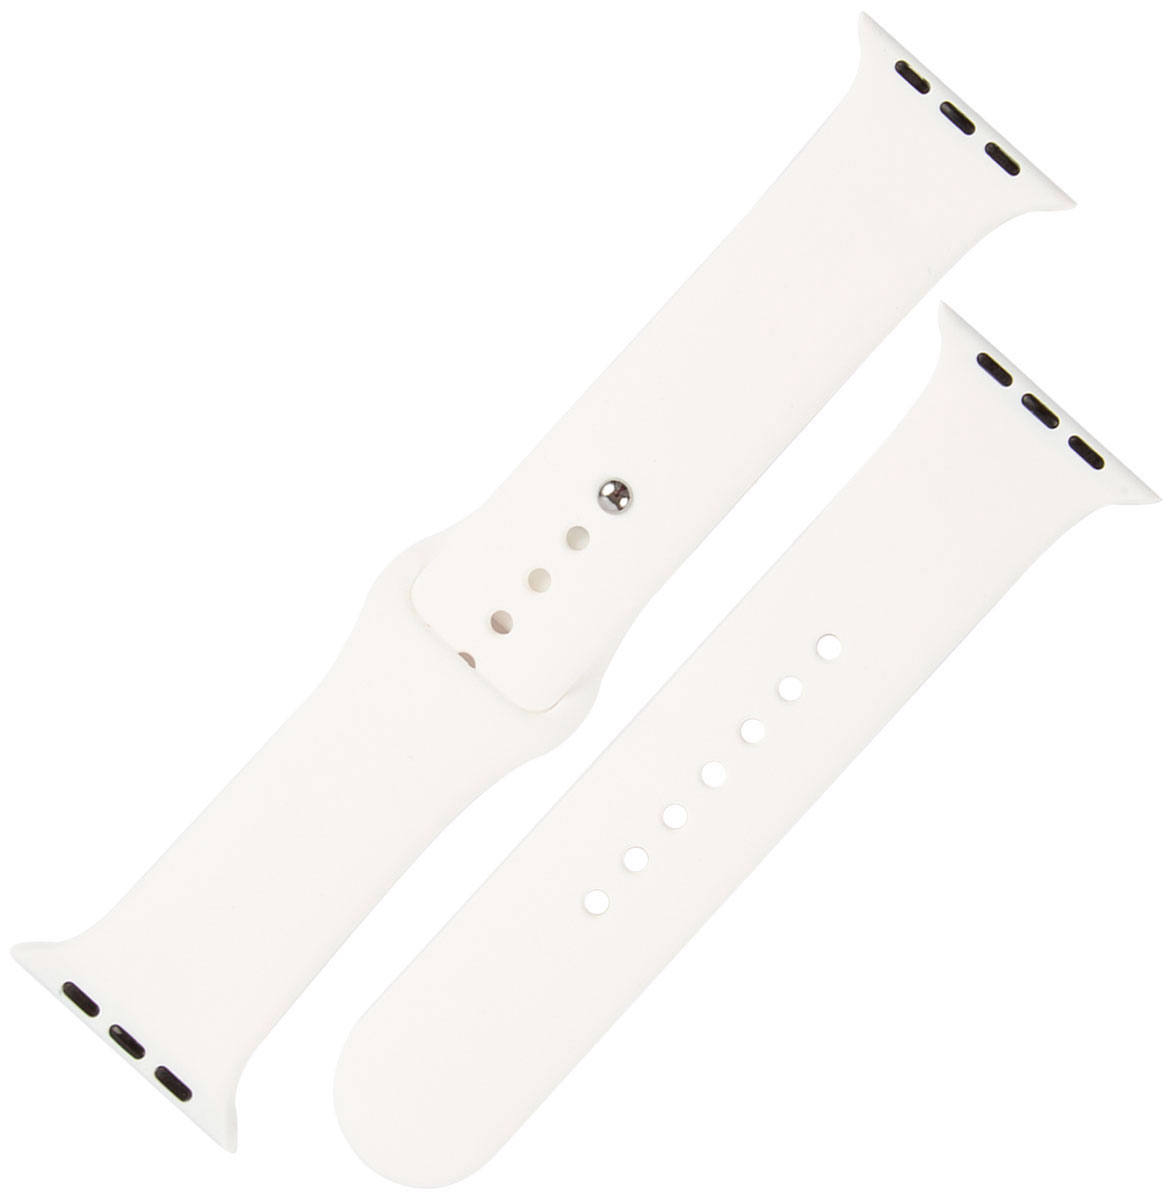 Ремешок силиконовый mObility для Apple watch – 42-44 мм (S3/S4/S5 SE/S6), белый ремешок силиконовый mobility для apple watch – 42 44 мм s3 s4 s5 se s6 песочный